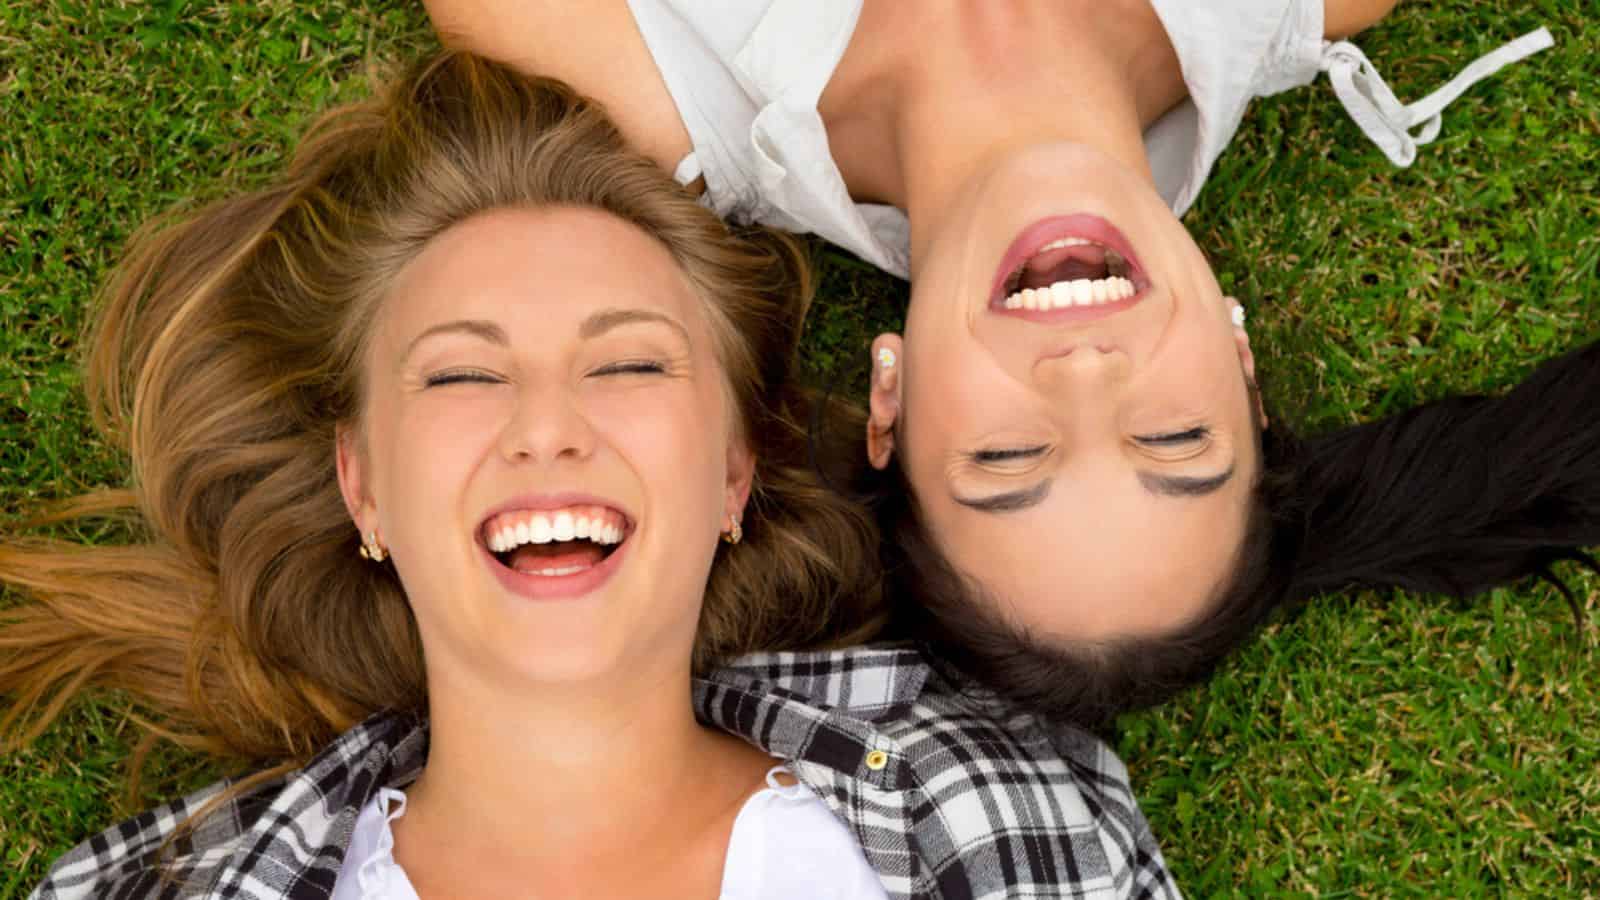 14 câu chuyện cười vui nhộn giúp bạn có một ngày tươi sáng hơn